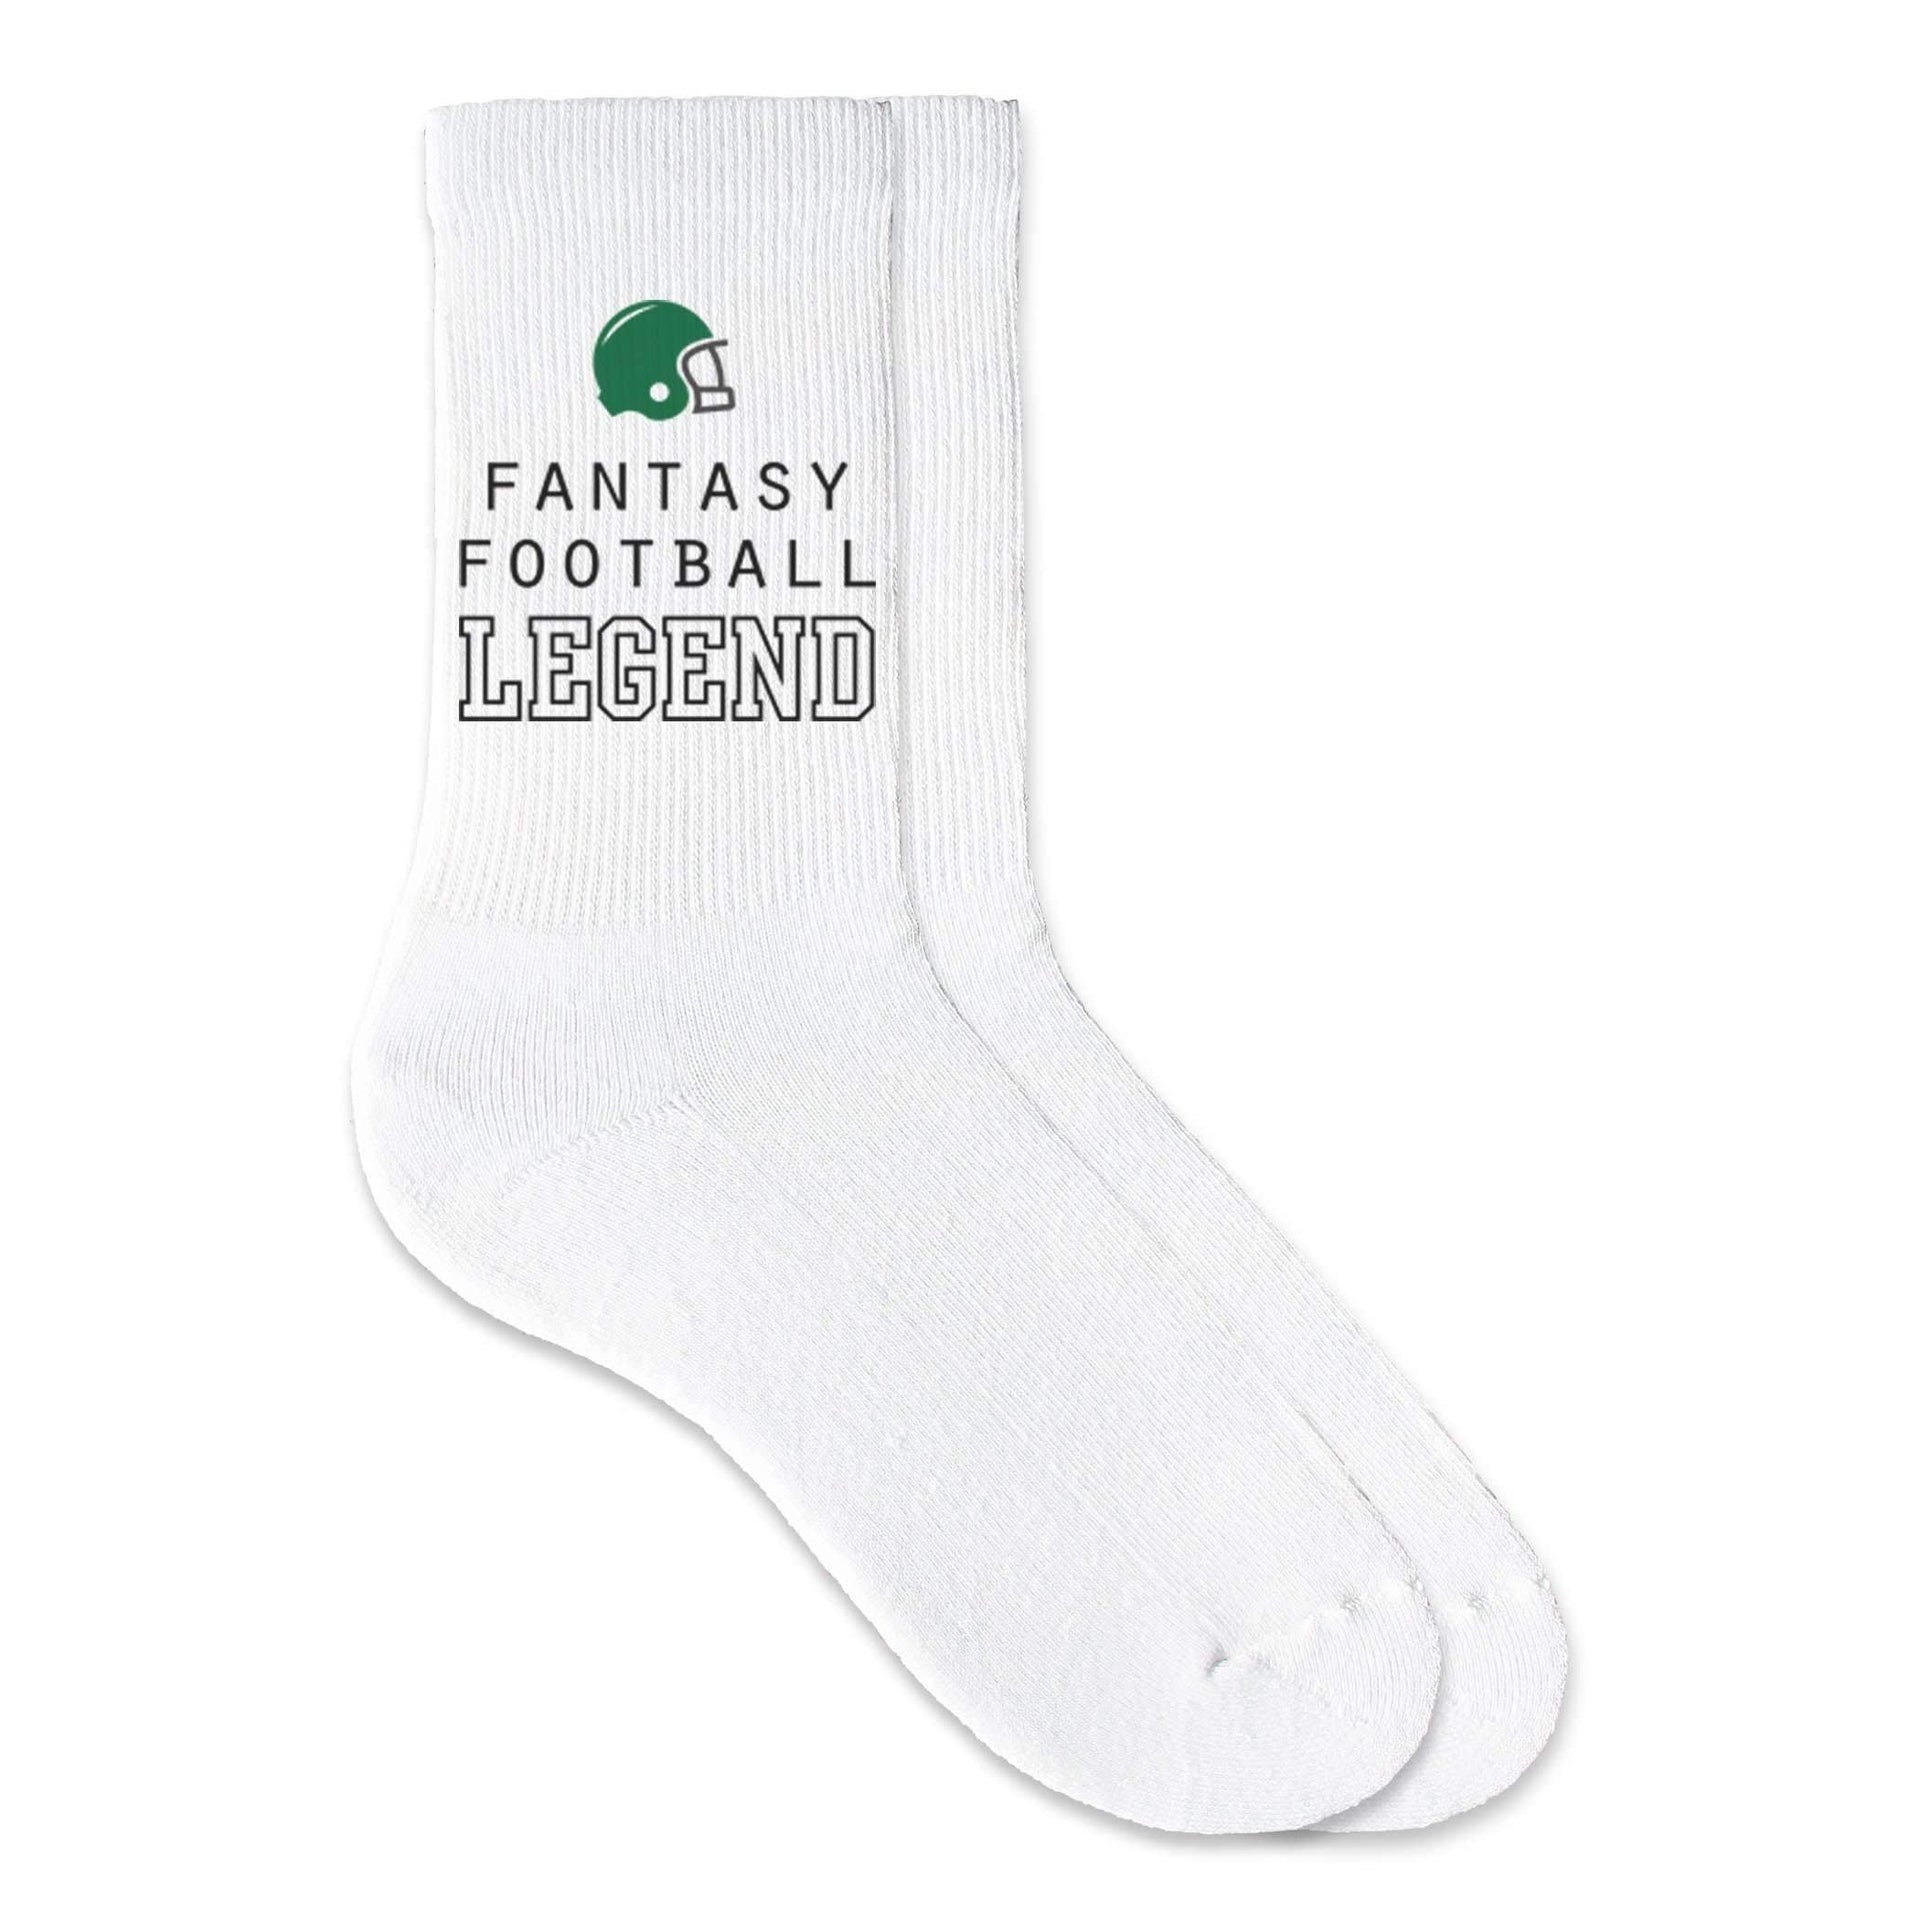 Fantasy football legend custom printed on crew socks.